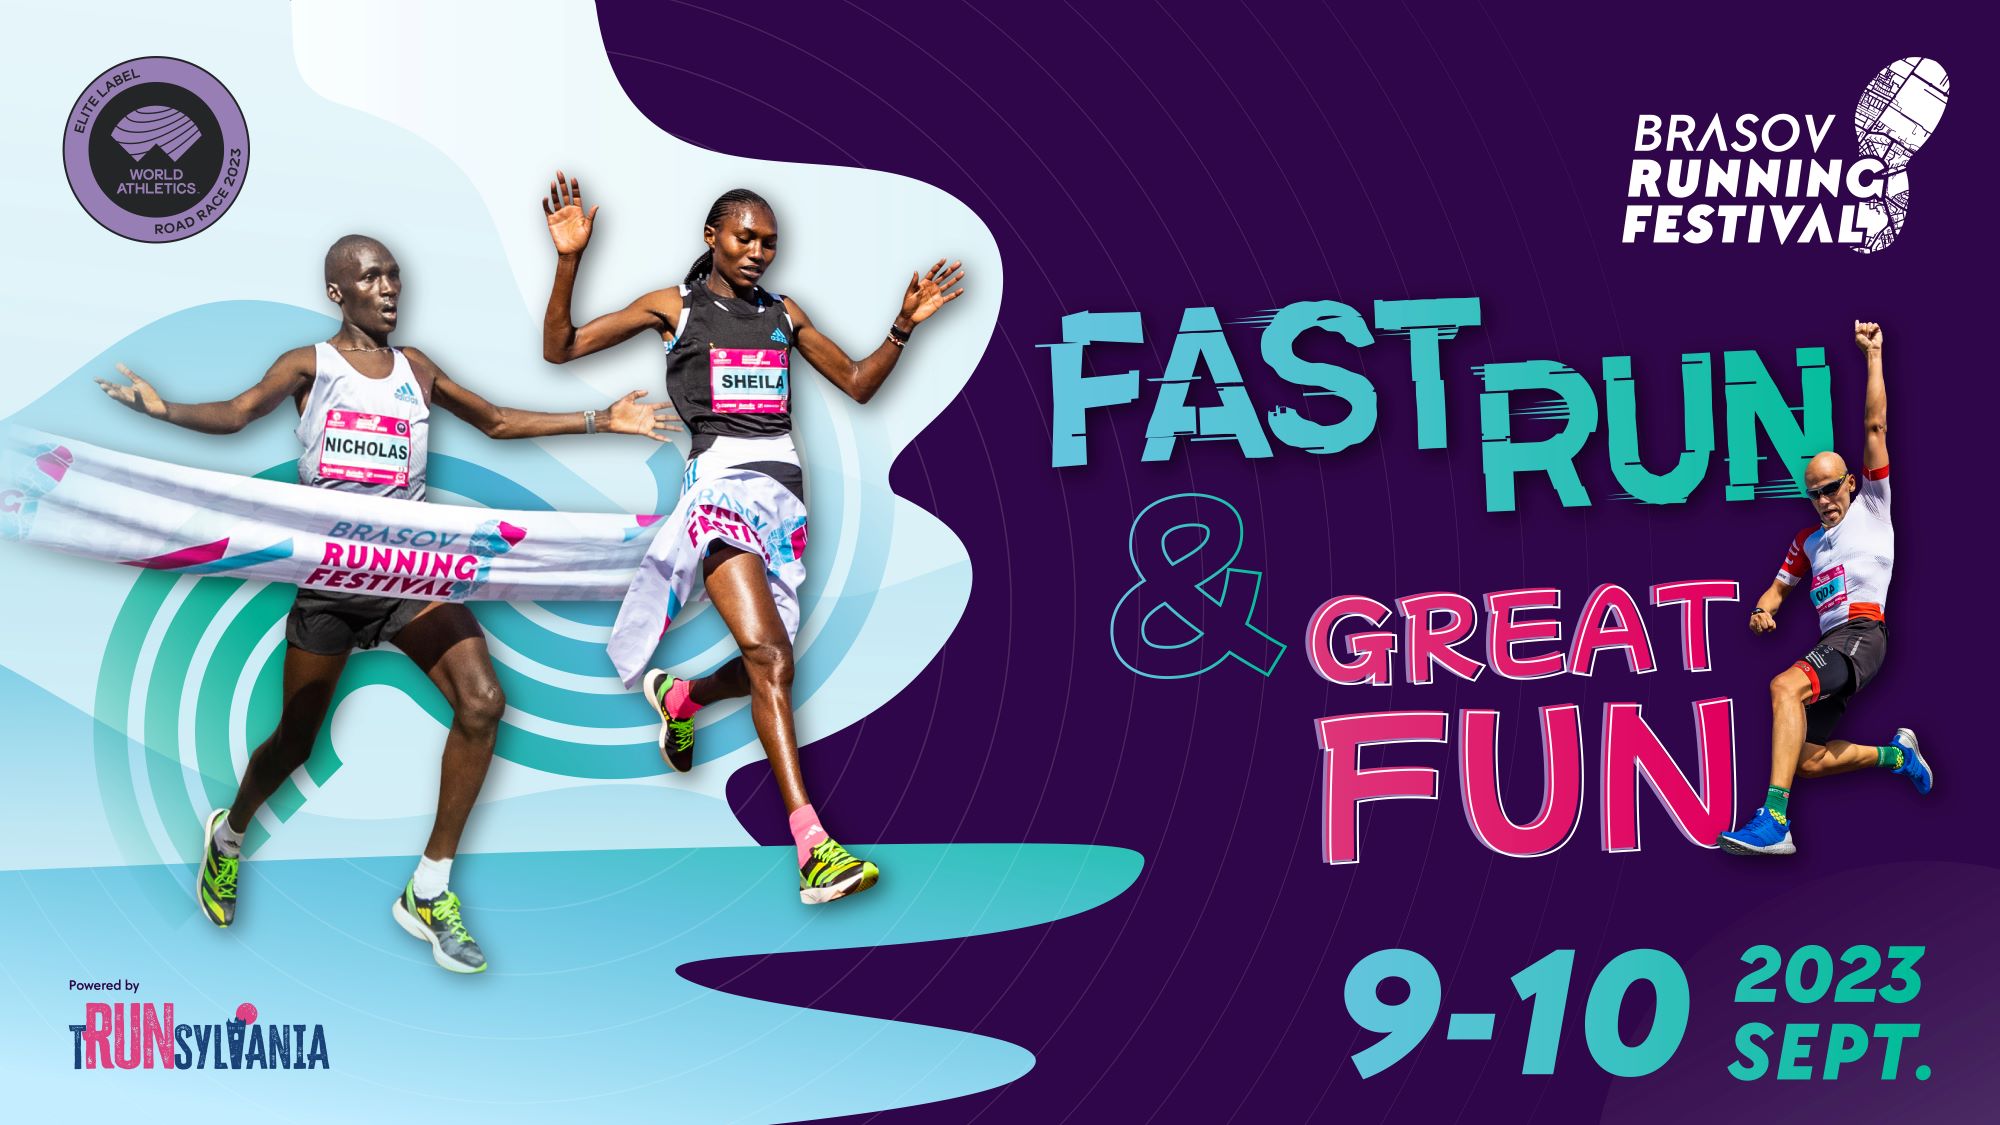 Superstaruri ale atletismului mondial se vor întrece în septembrie la Brașov Running Festival